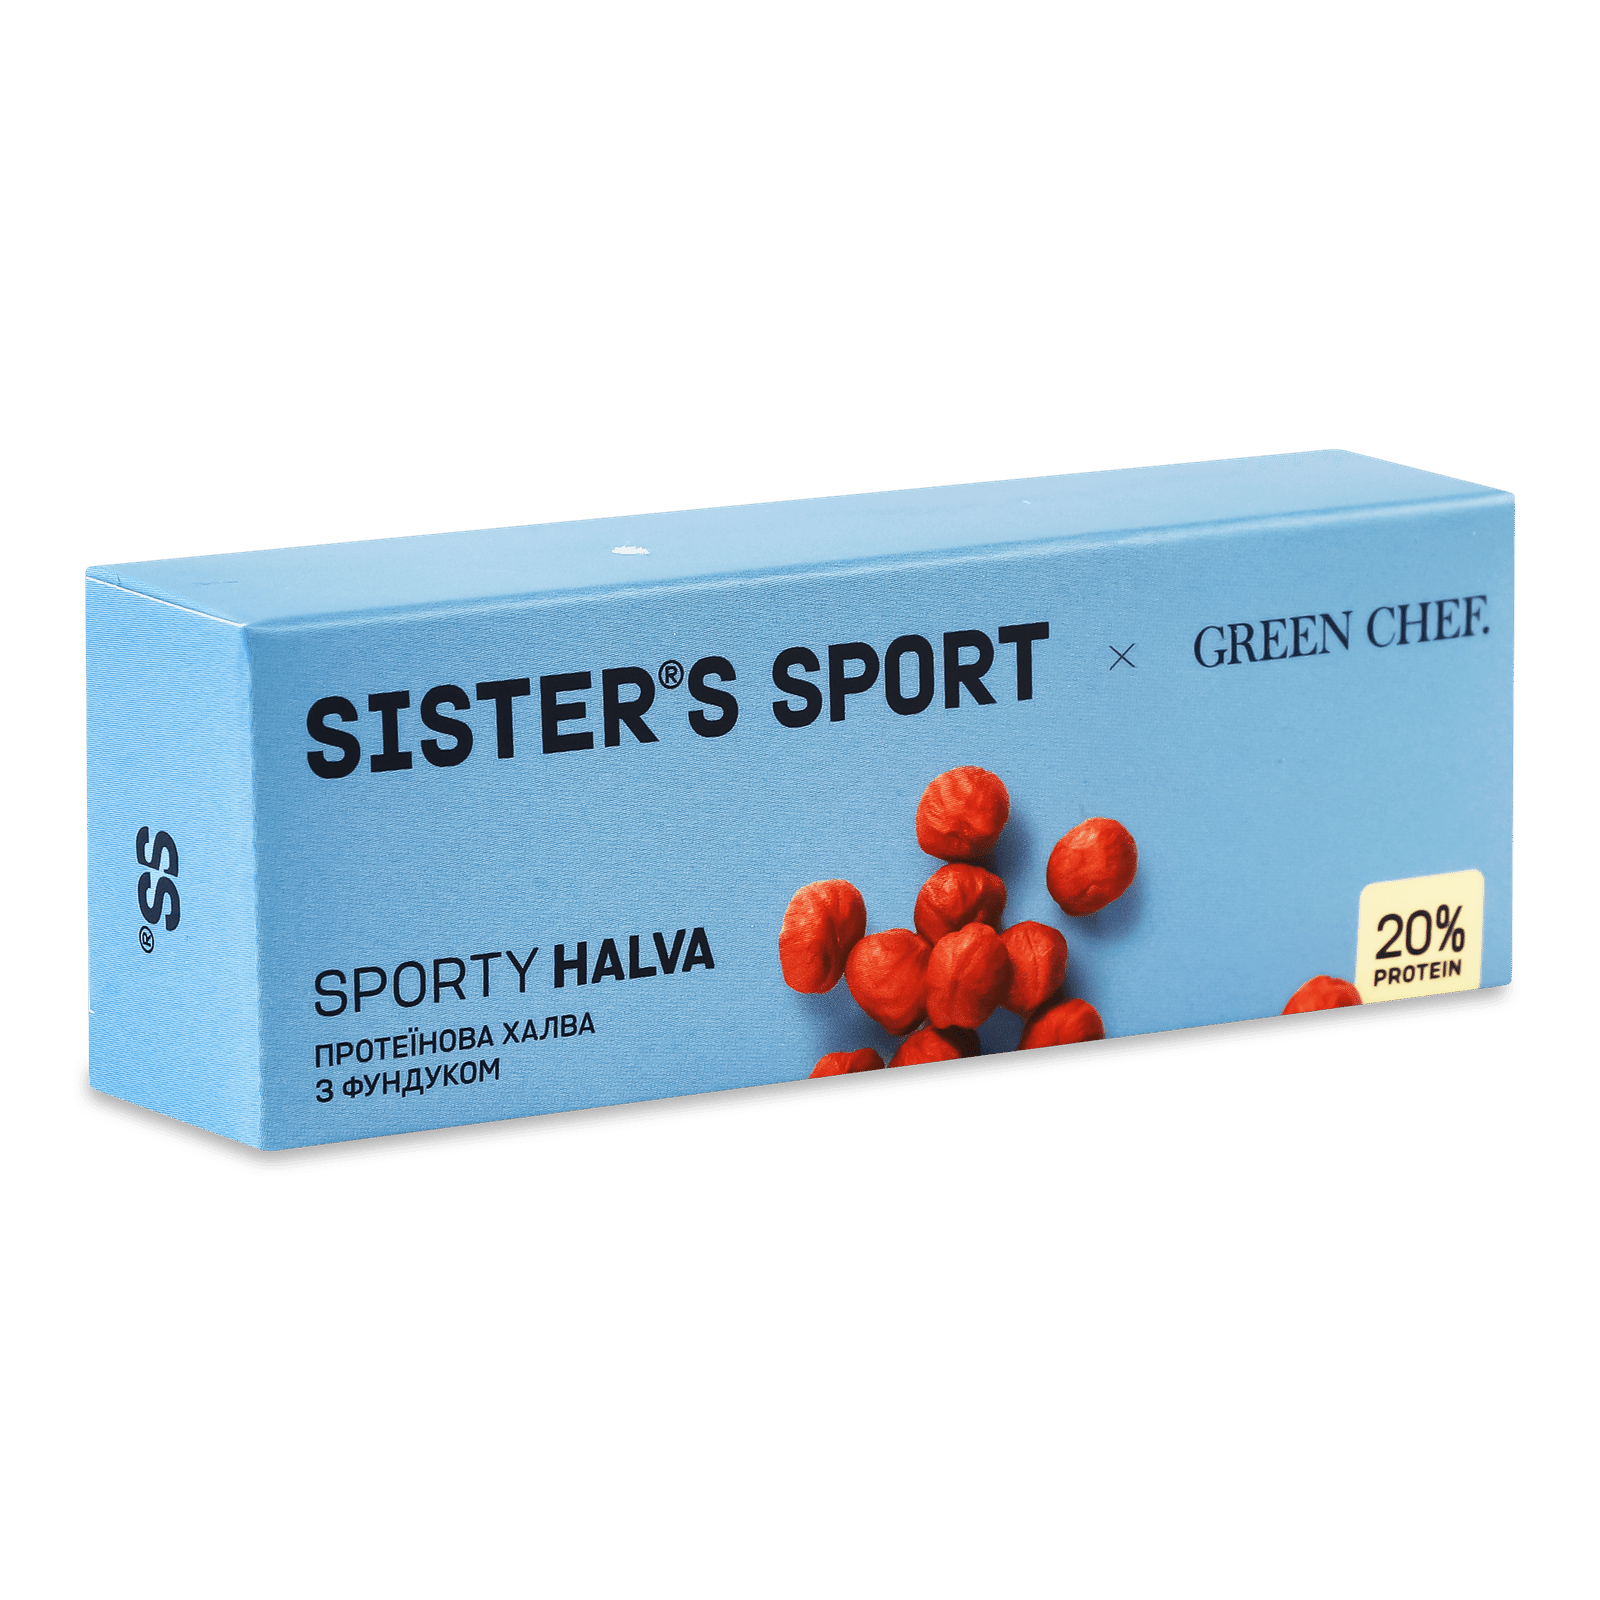 Халва Green Chef Sister’s Sport протеїнова фунд - 1